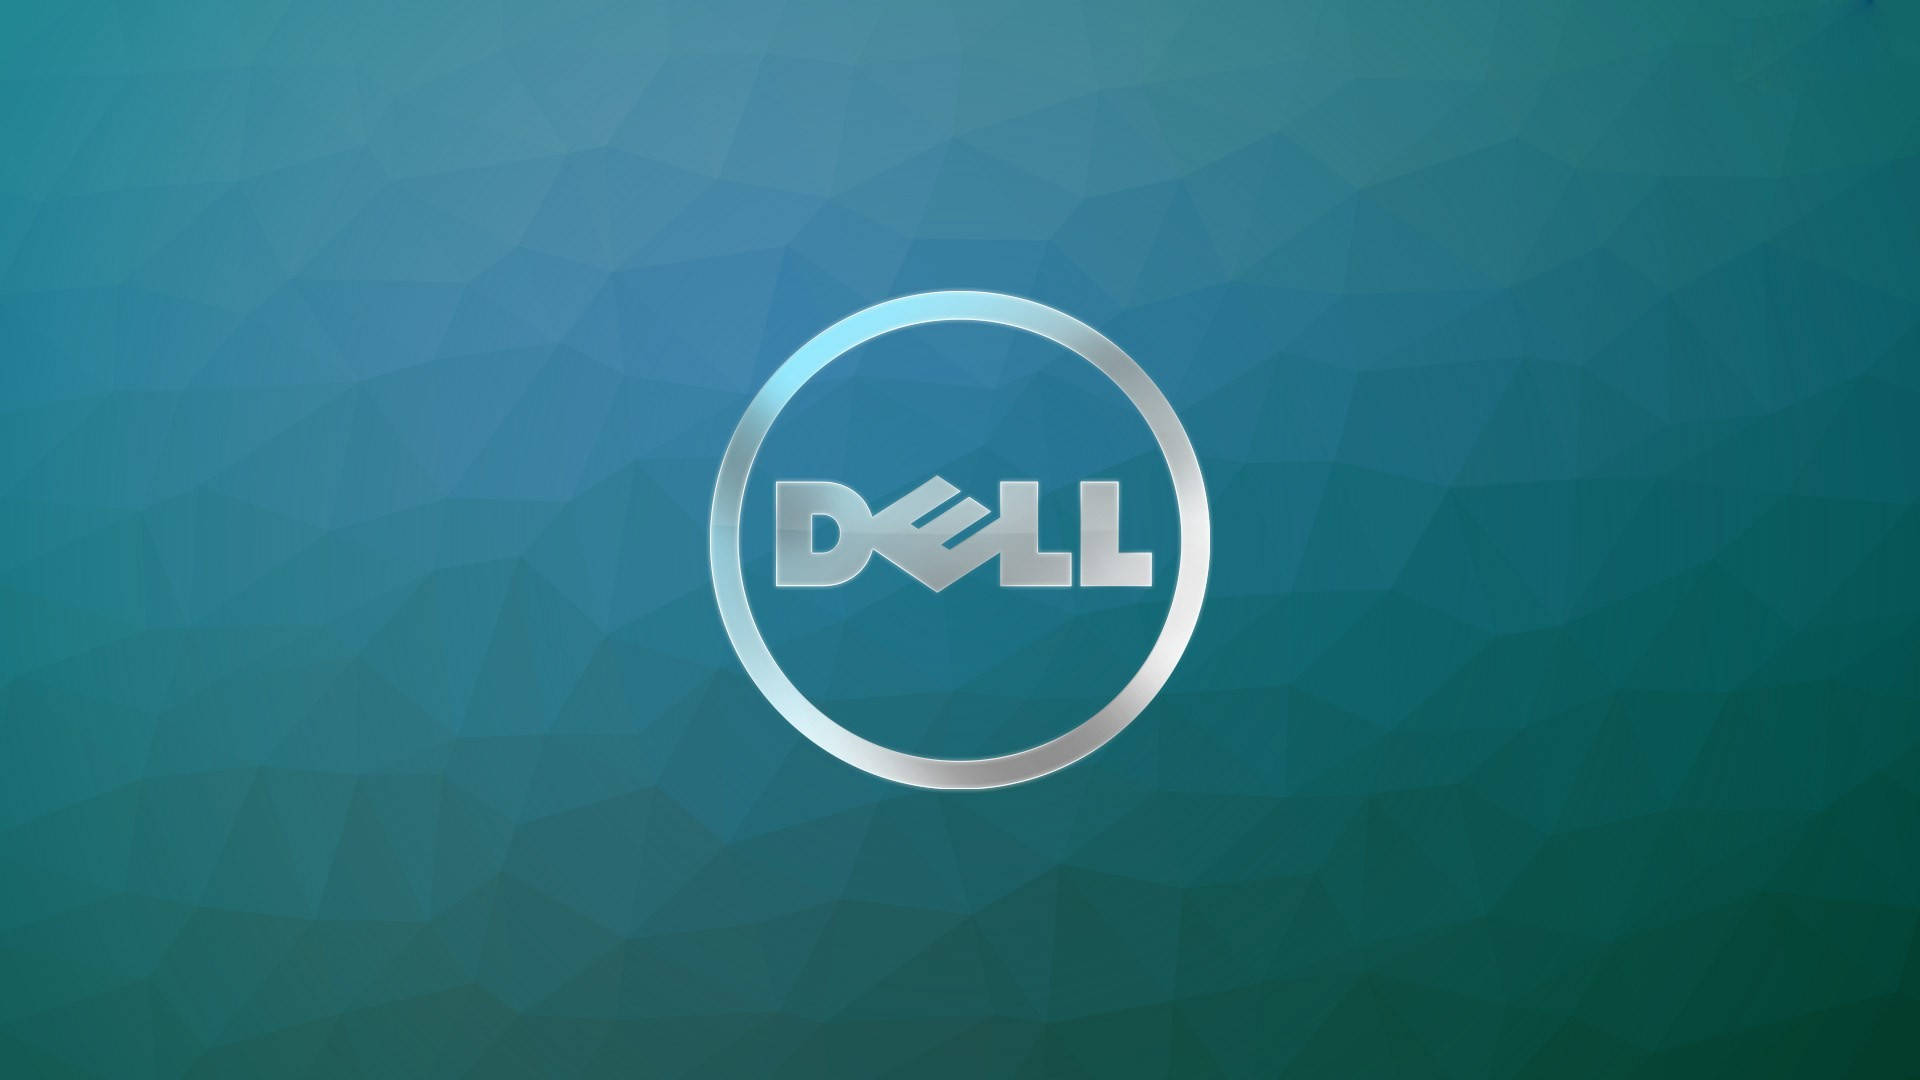 Silver Dell Hd Logo Wallpaper